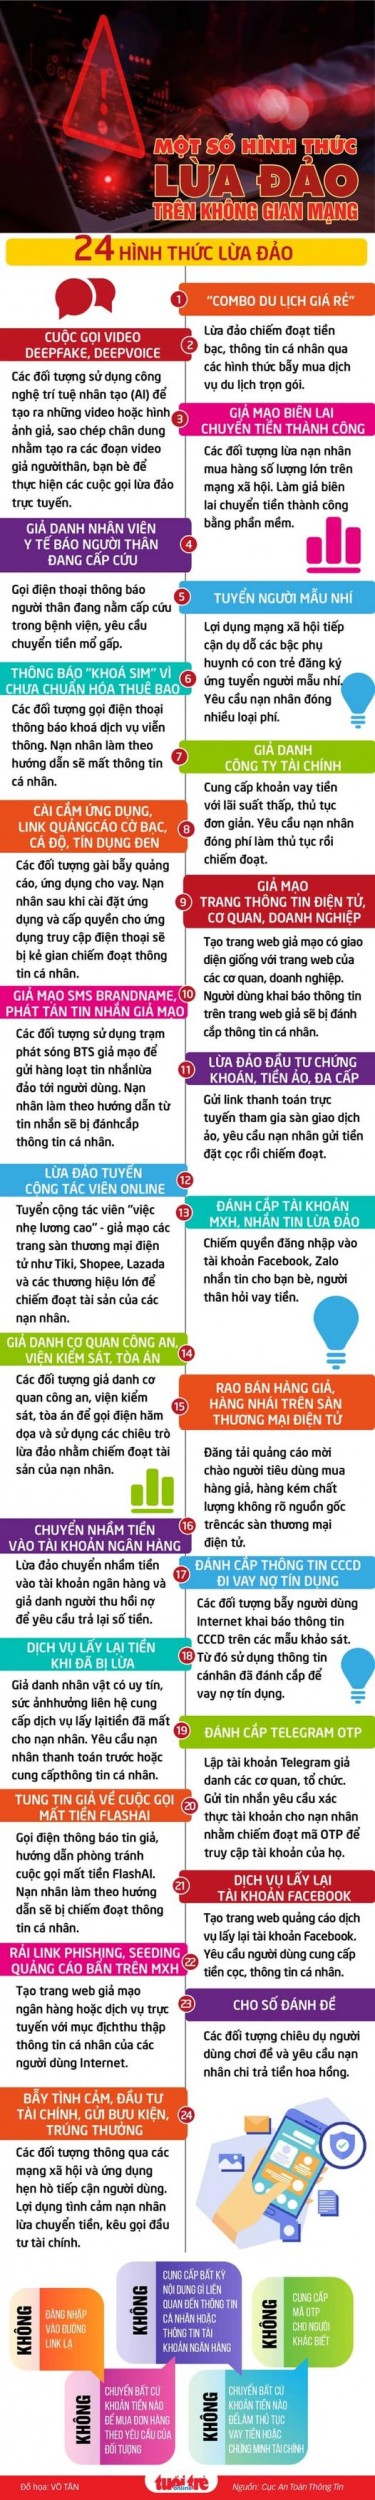 Nhận diện 24 hình thức lừa đảo trên không gian mạng Việt Nam